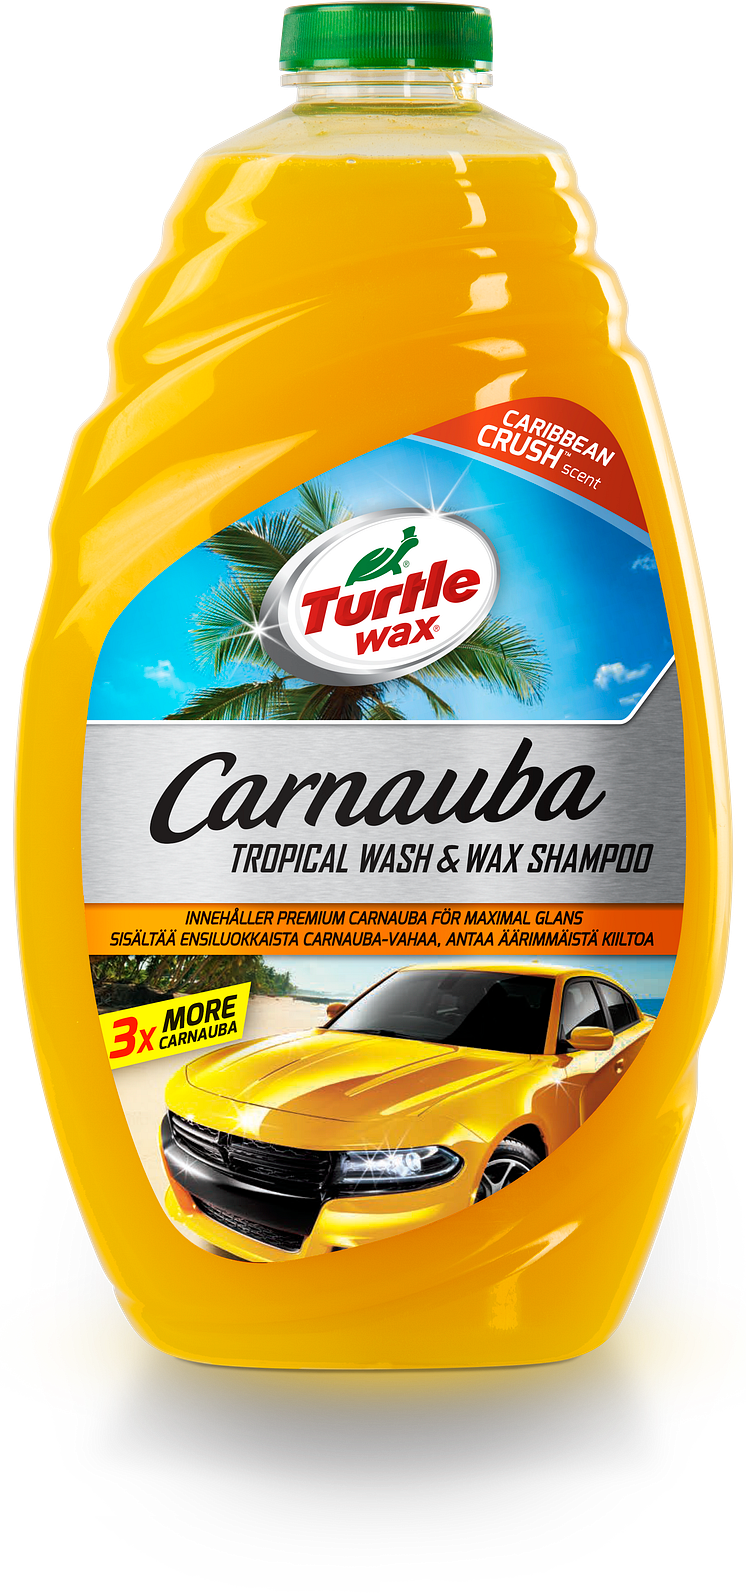 Turtle Wax Carnauba Tropical Wash & Wax Shampoo 